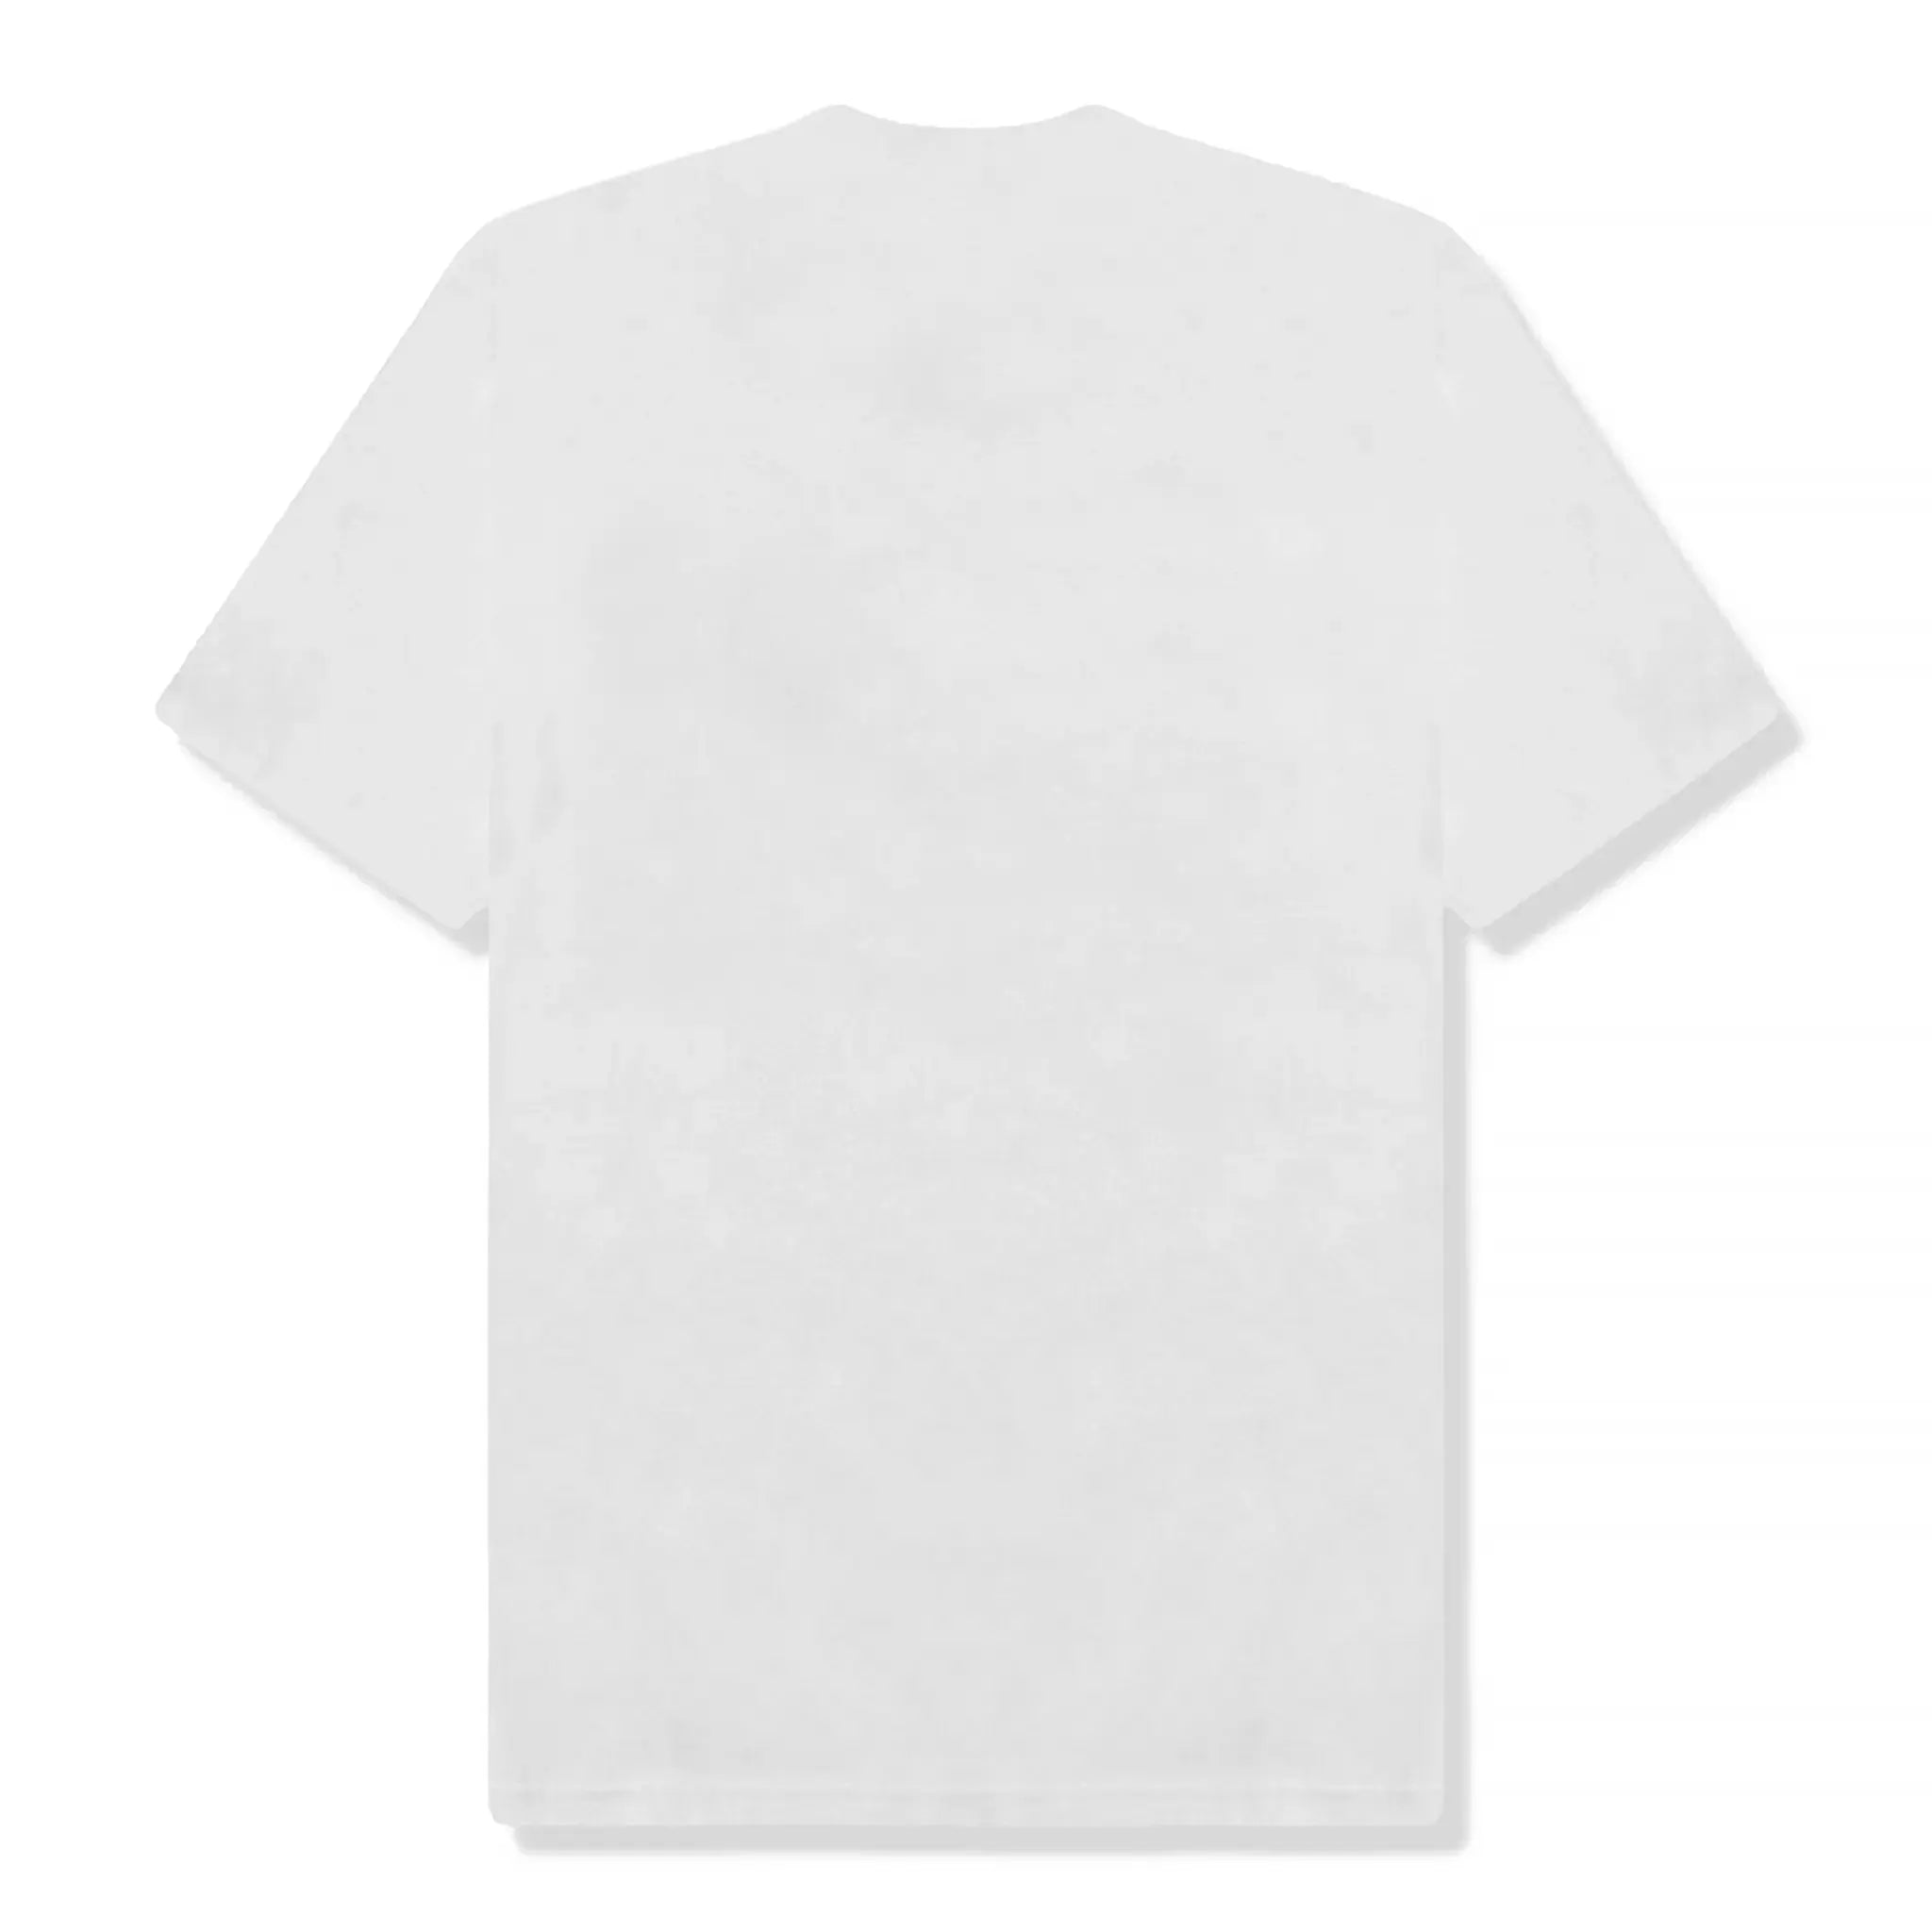 Back view of Supreme Maradona White T Shirt